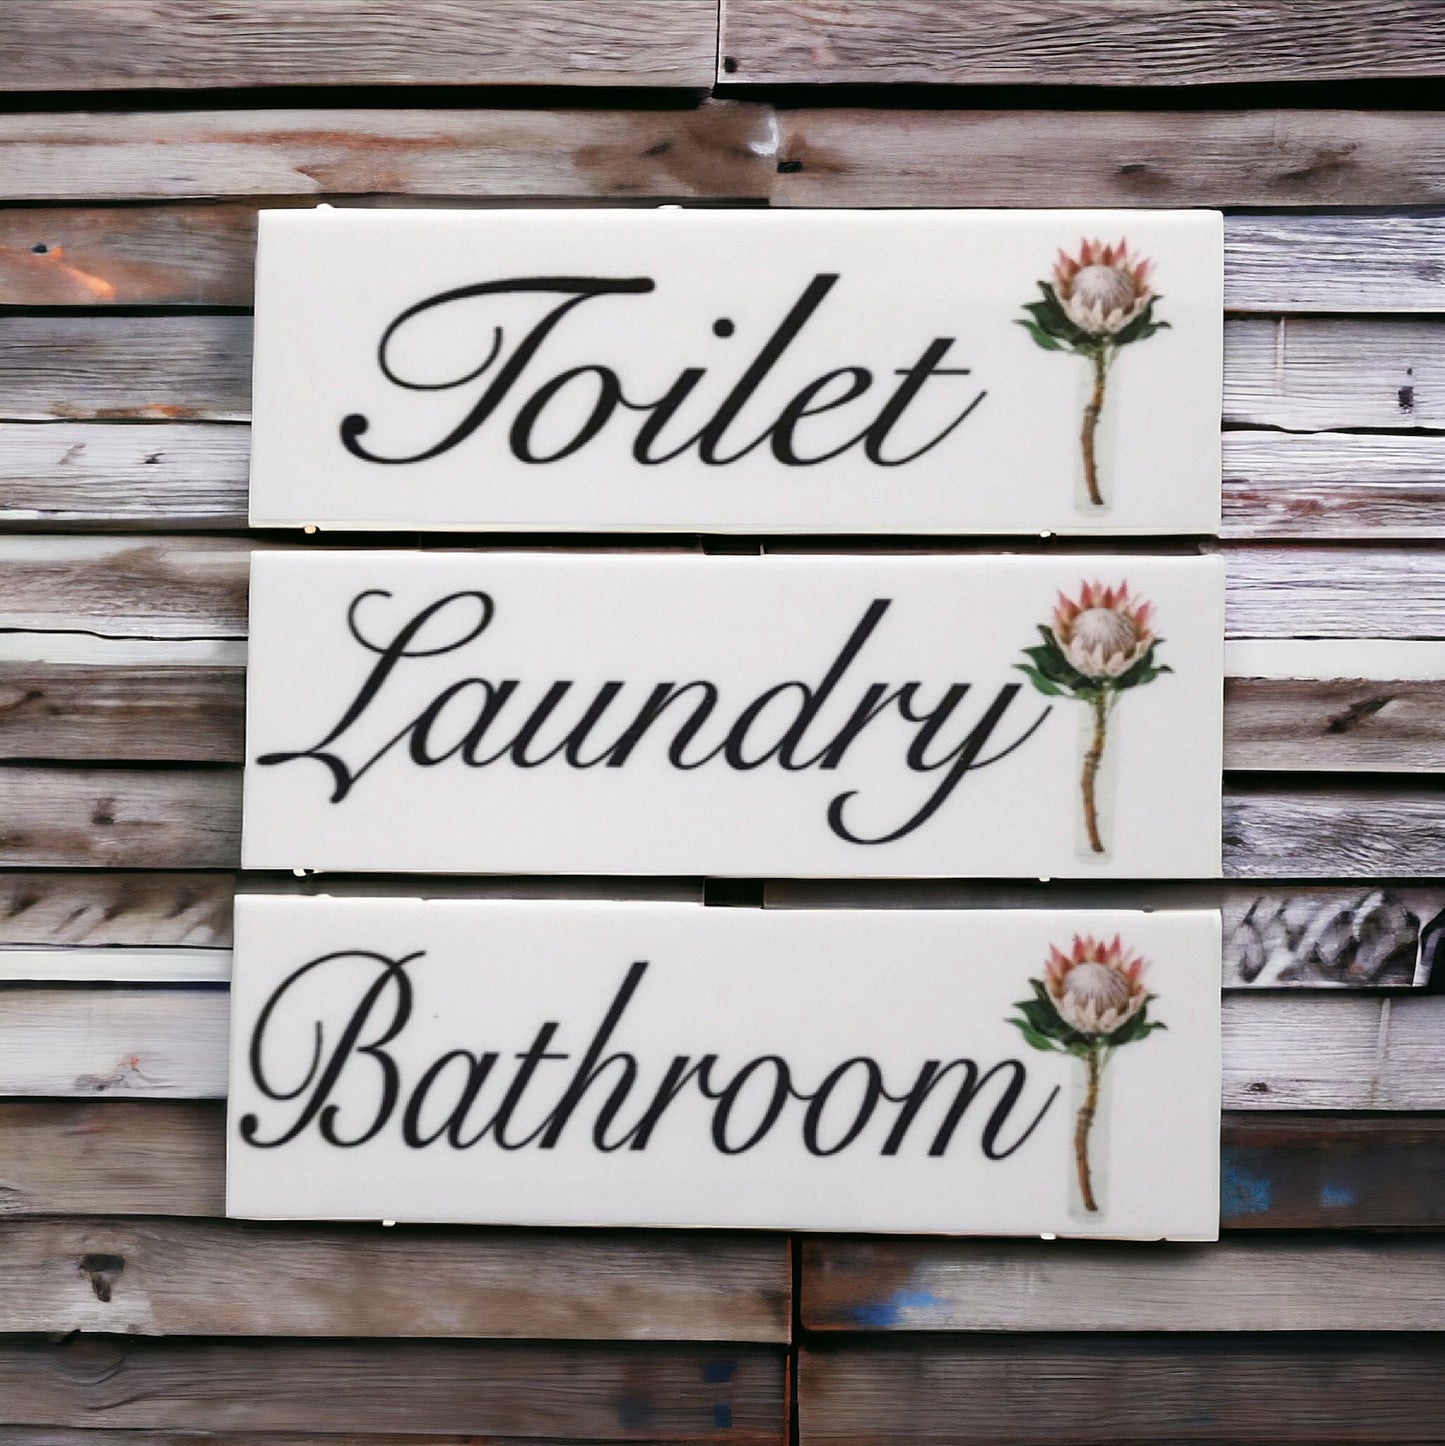 Protea Toilet Laundry Bathroom Door Sign